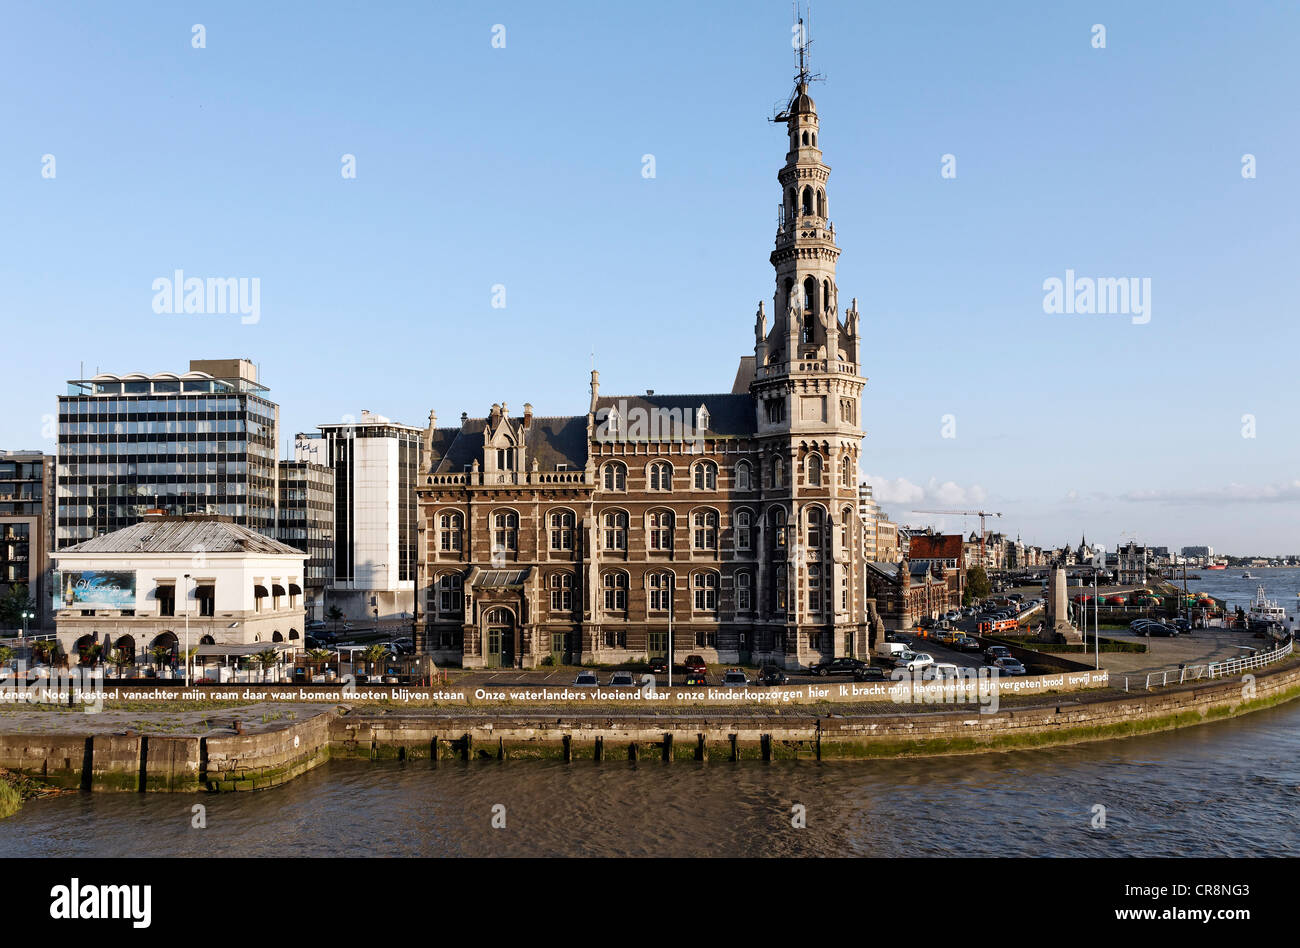 Historic pilotage building on the Schelde or Scheldt river, Antwerp, Flanders, Belgium, Benelux, Europe Stock Photo